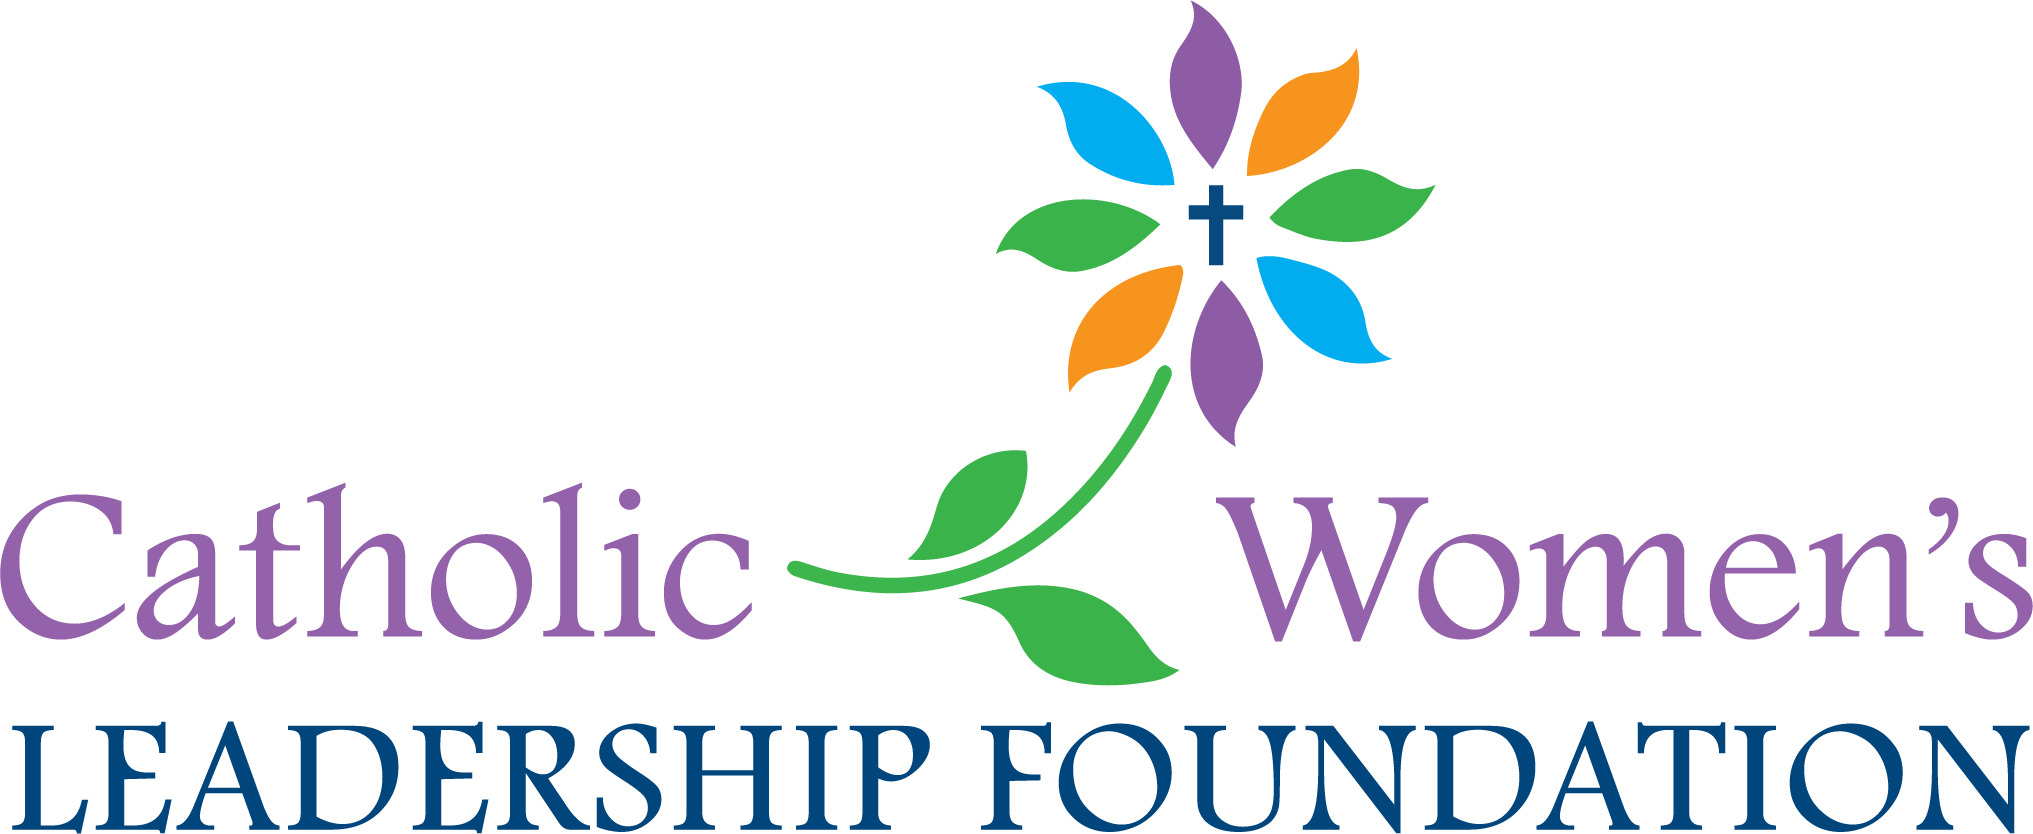 Catholic Women's Leadership Foundation logo